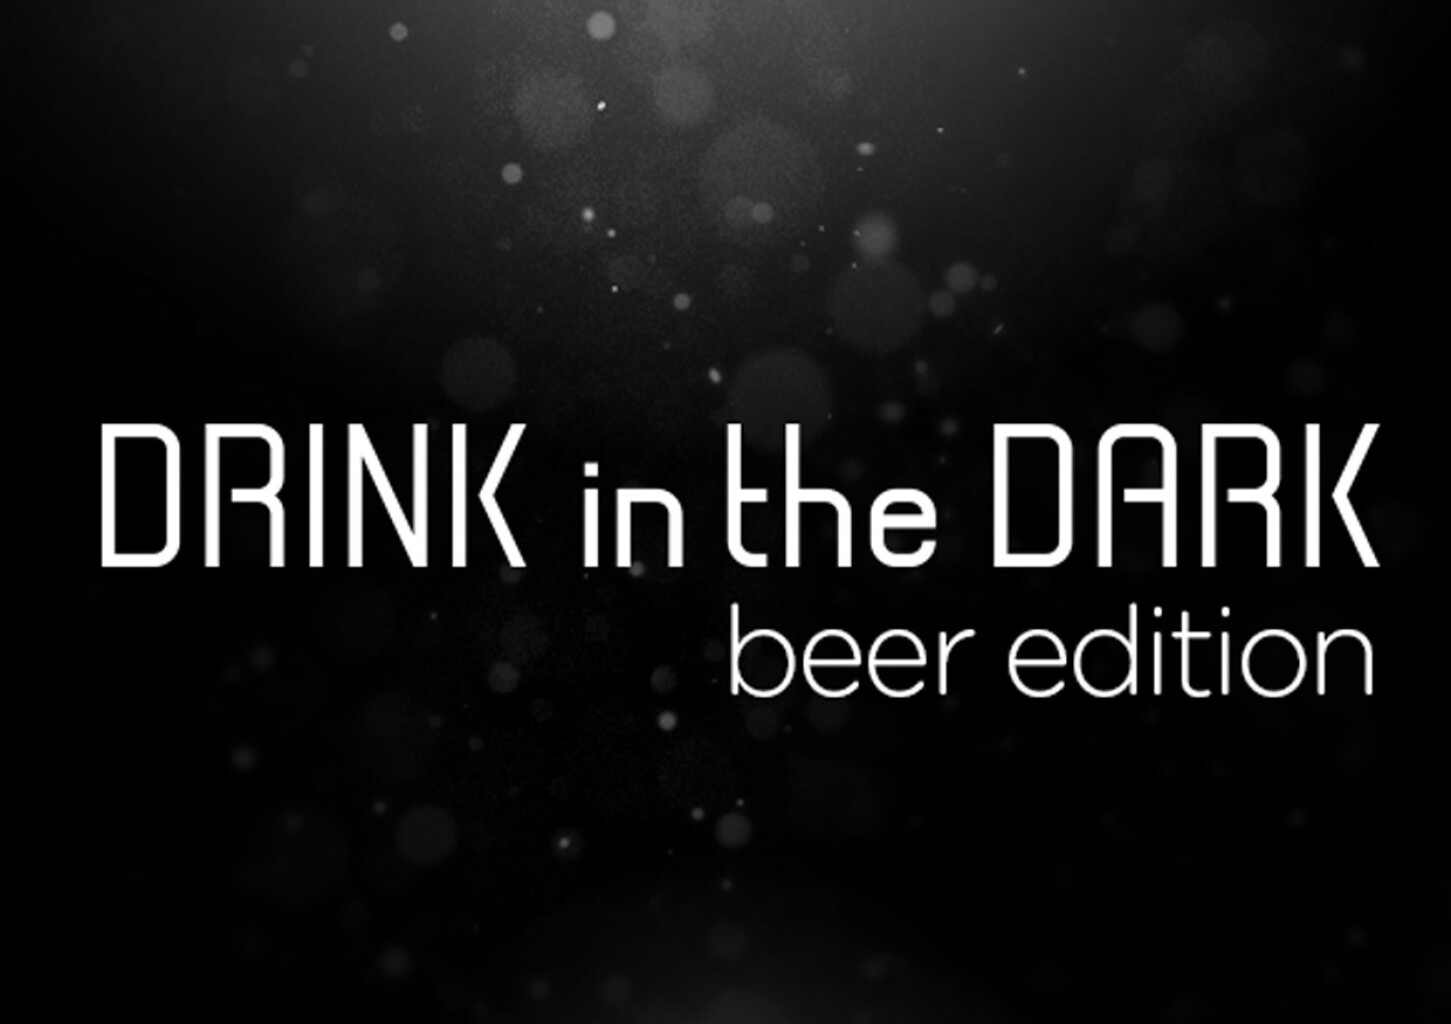 Degustacja Piwa w Ciemności | Drink In the Dark – Beer Edition | Poznań